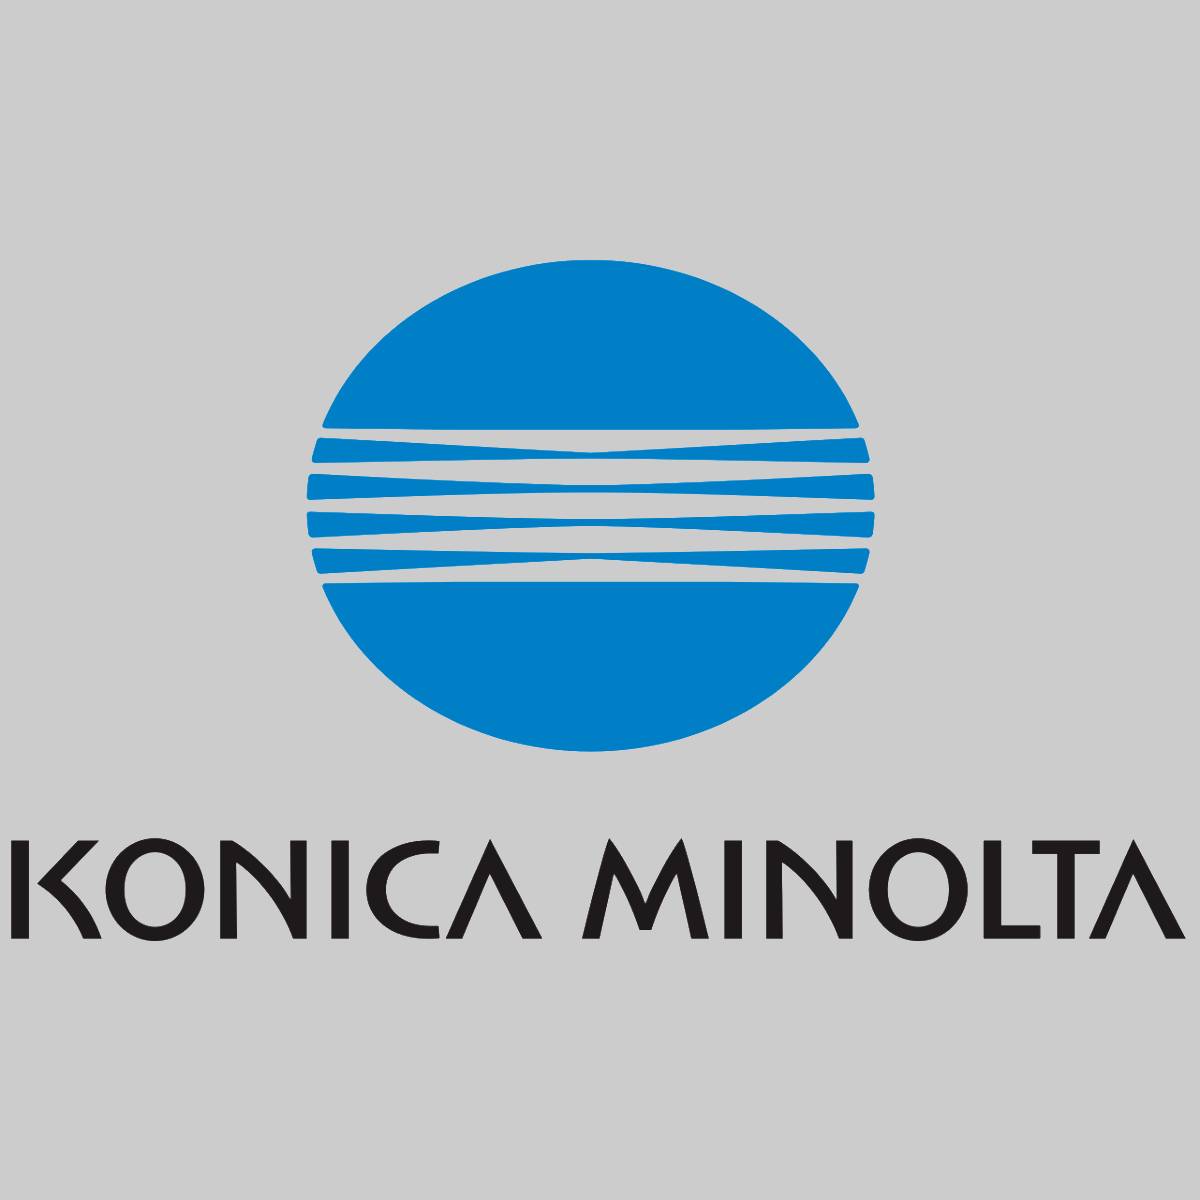 "Toner d'origine Konica Minolta TN210C cyan 8938-512 pour Bizhub C250-C252P NOUVEAU